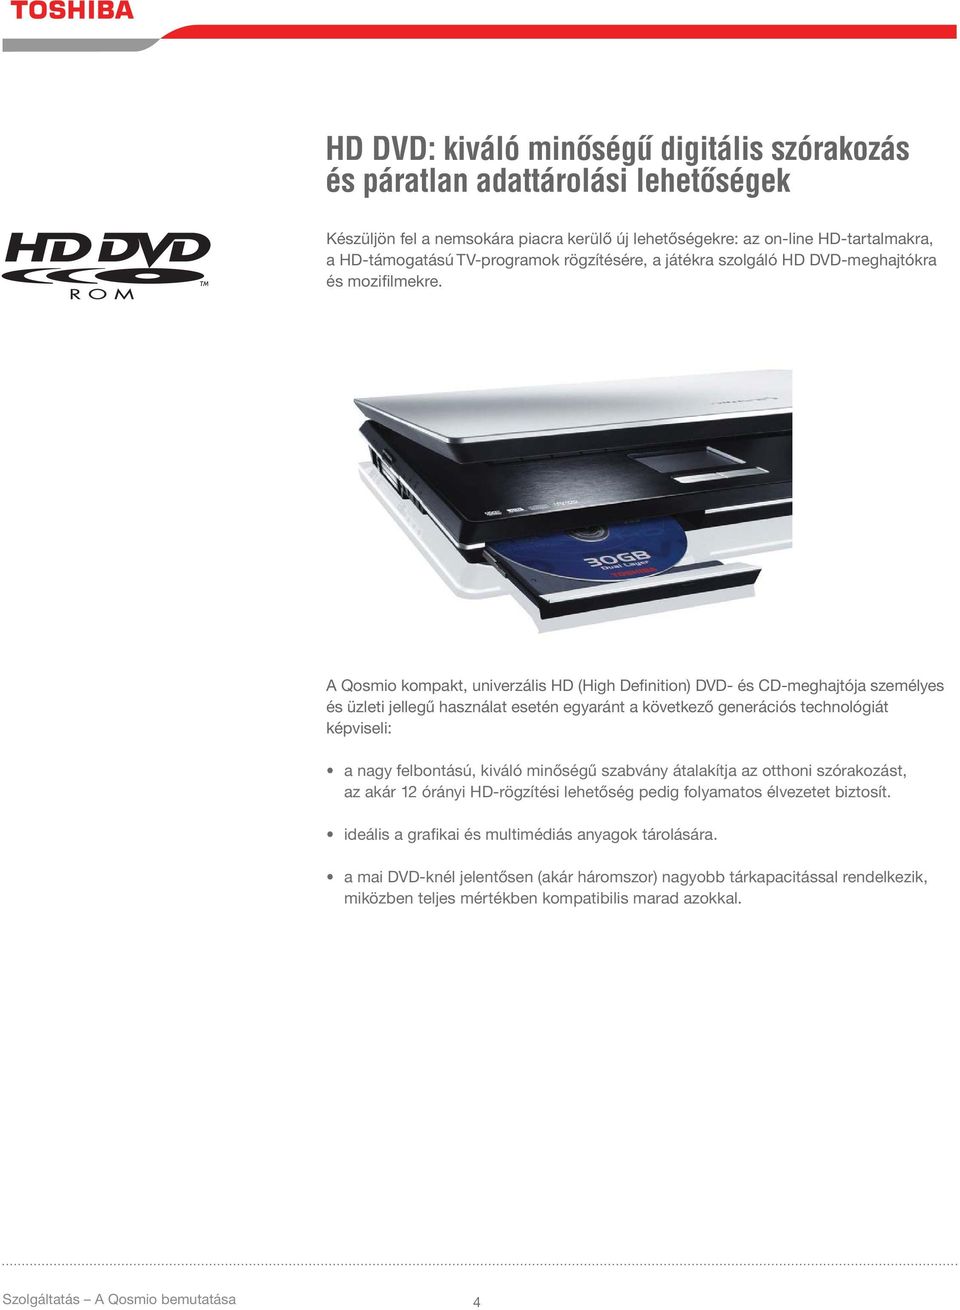 A Qosmio kompakt, univerzális HD (High Definition) DVD- és CD-meghajtója személyes és üzleti jellegű használat esetén egyaránt a következő generációs technológiát képviseli: a nagy felbontású, kiváló